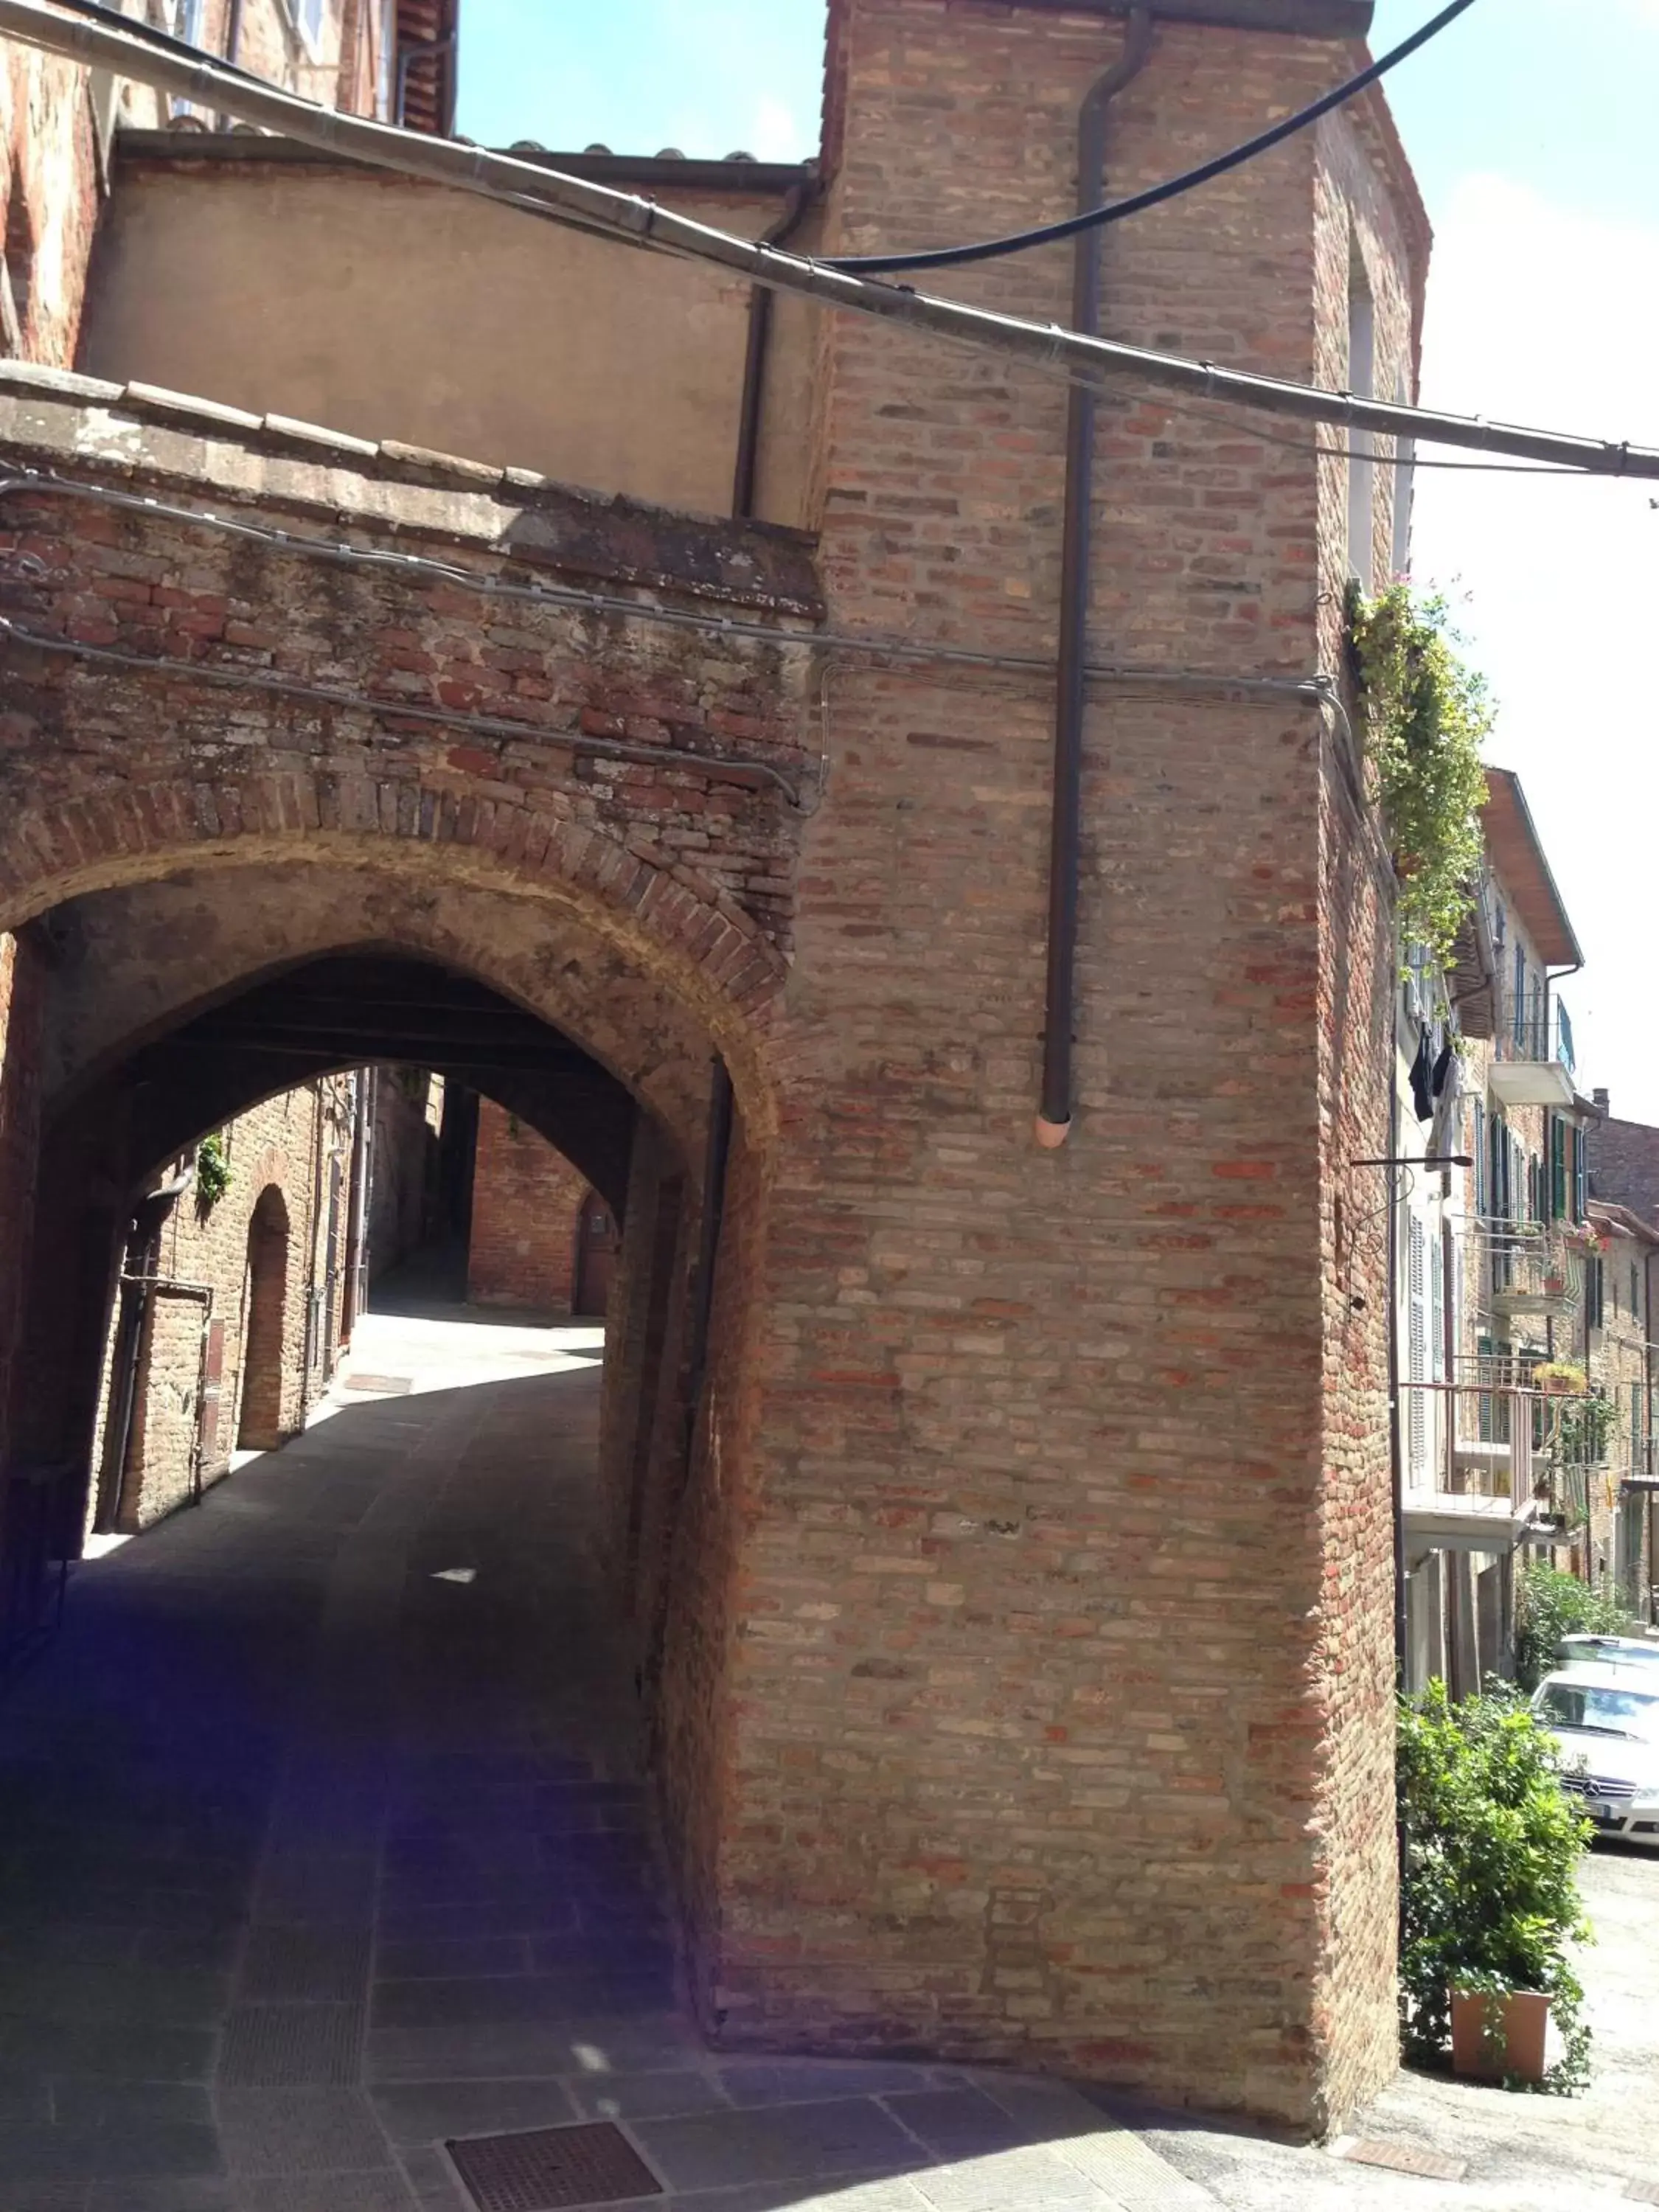 Street view in Casina Mazzuoli